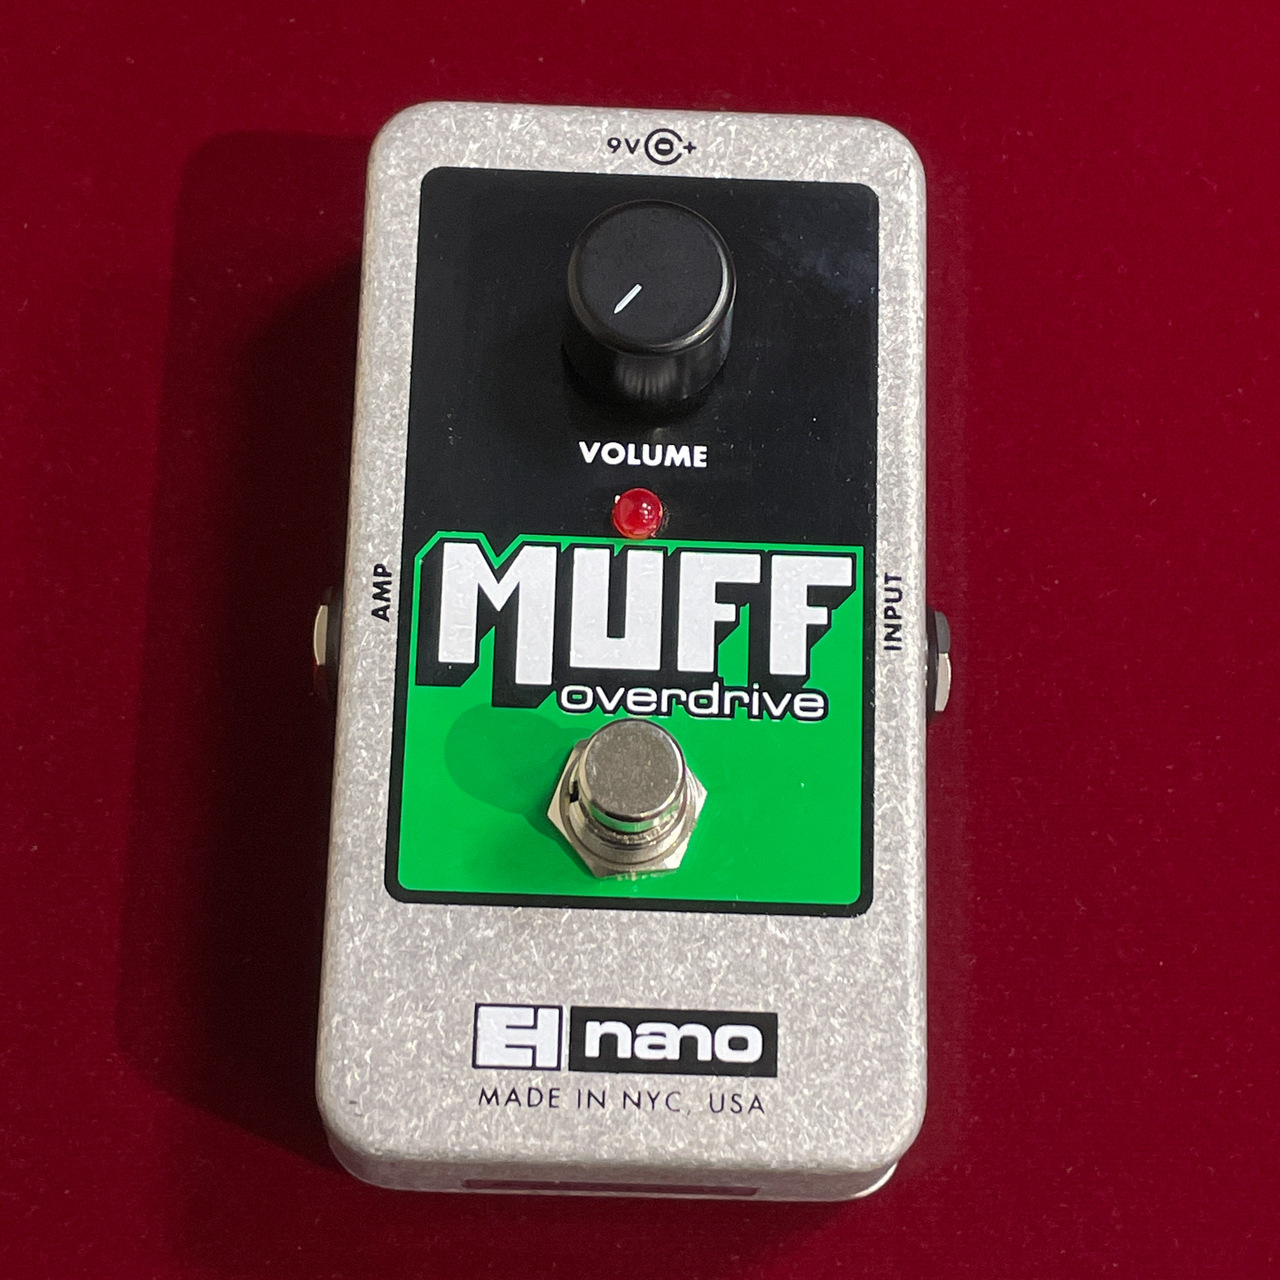 electro-harmonix Muff Overdrive (生産終了品)